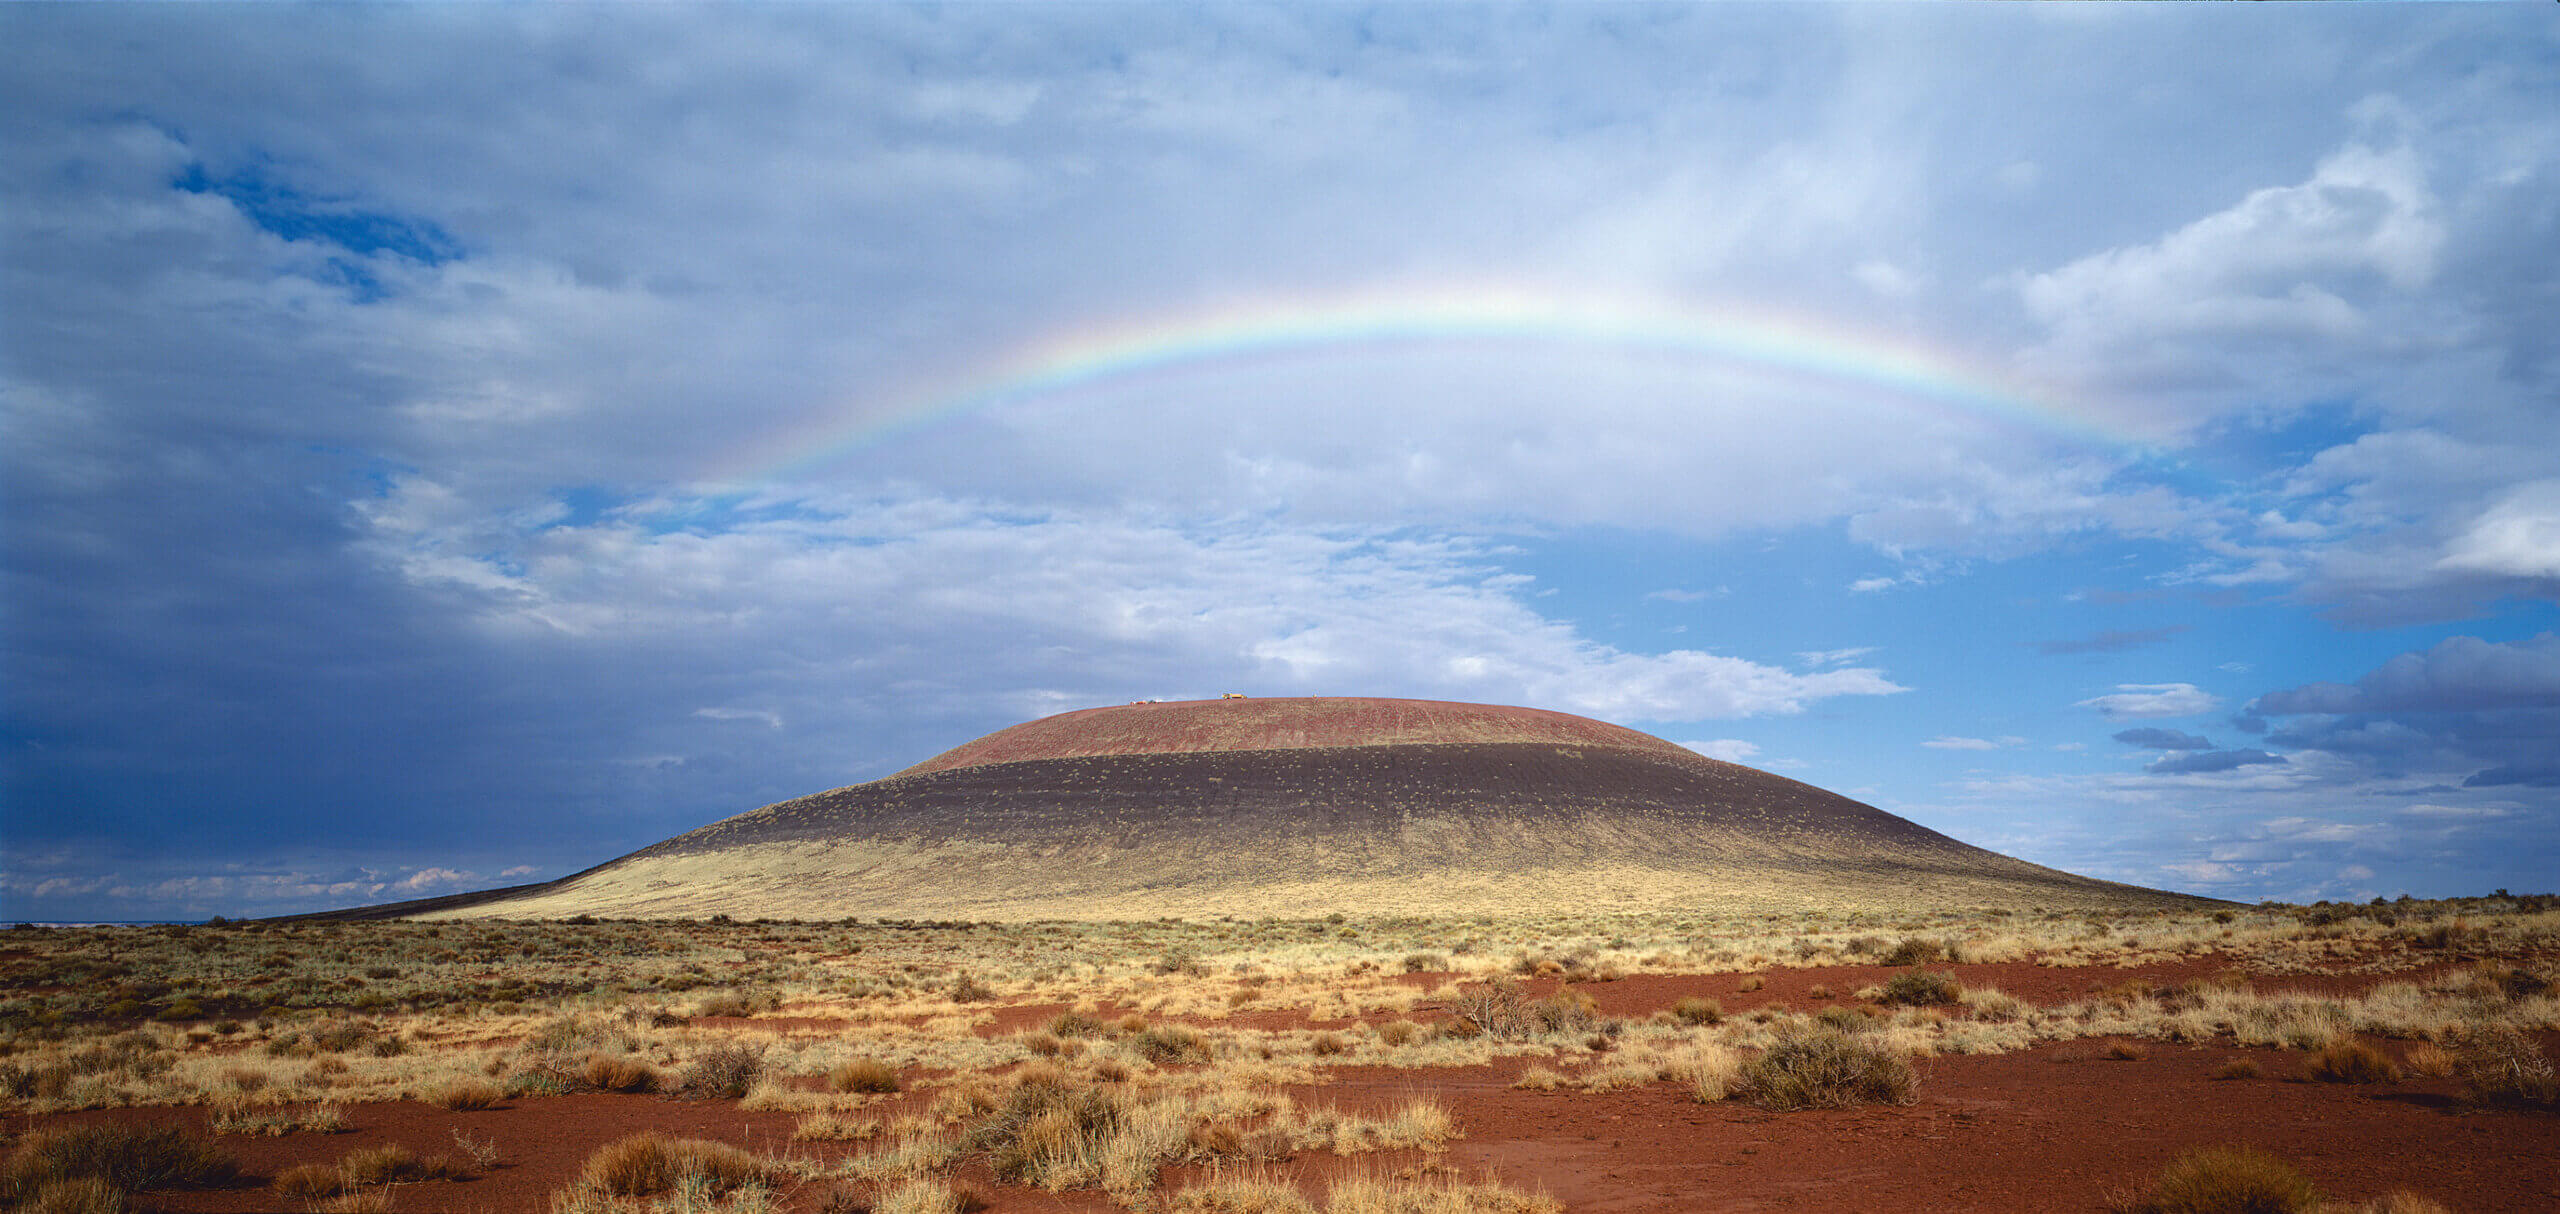 A rainbow over the desert